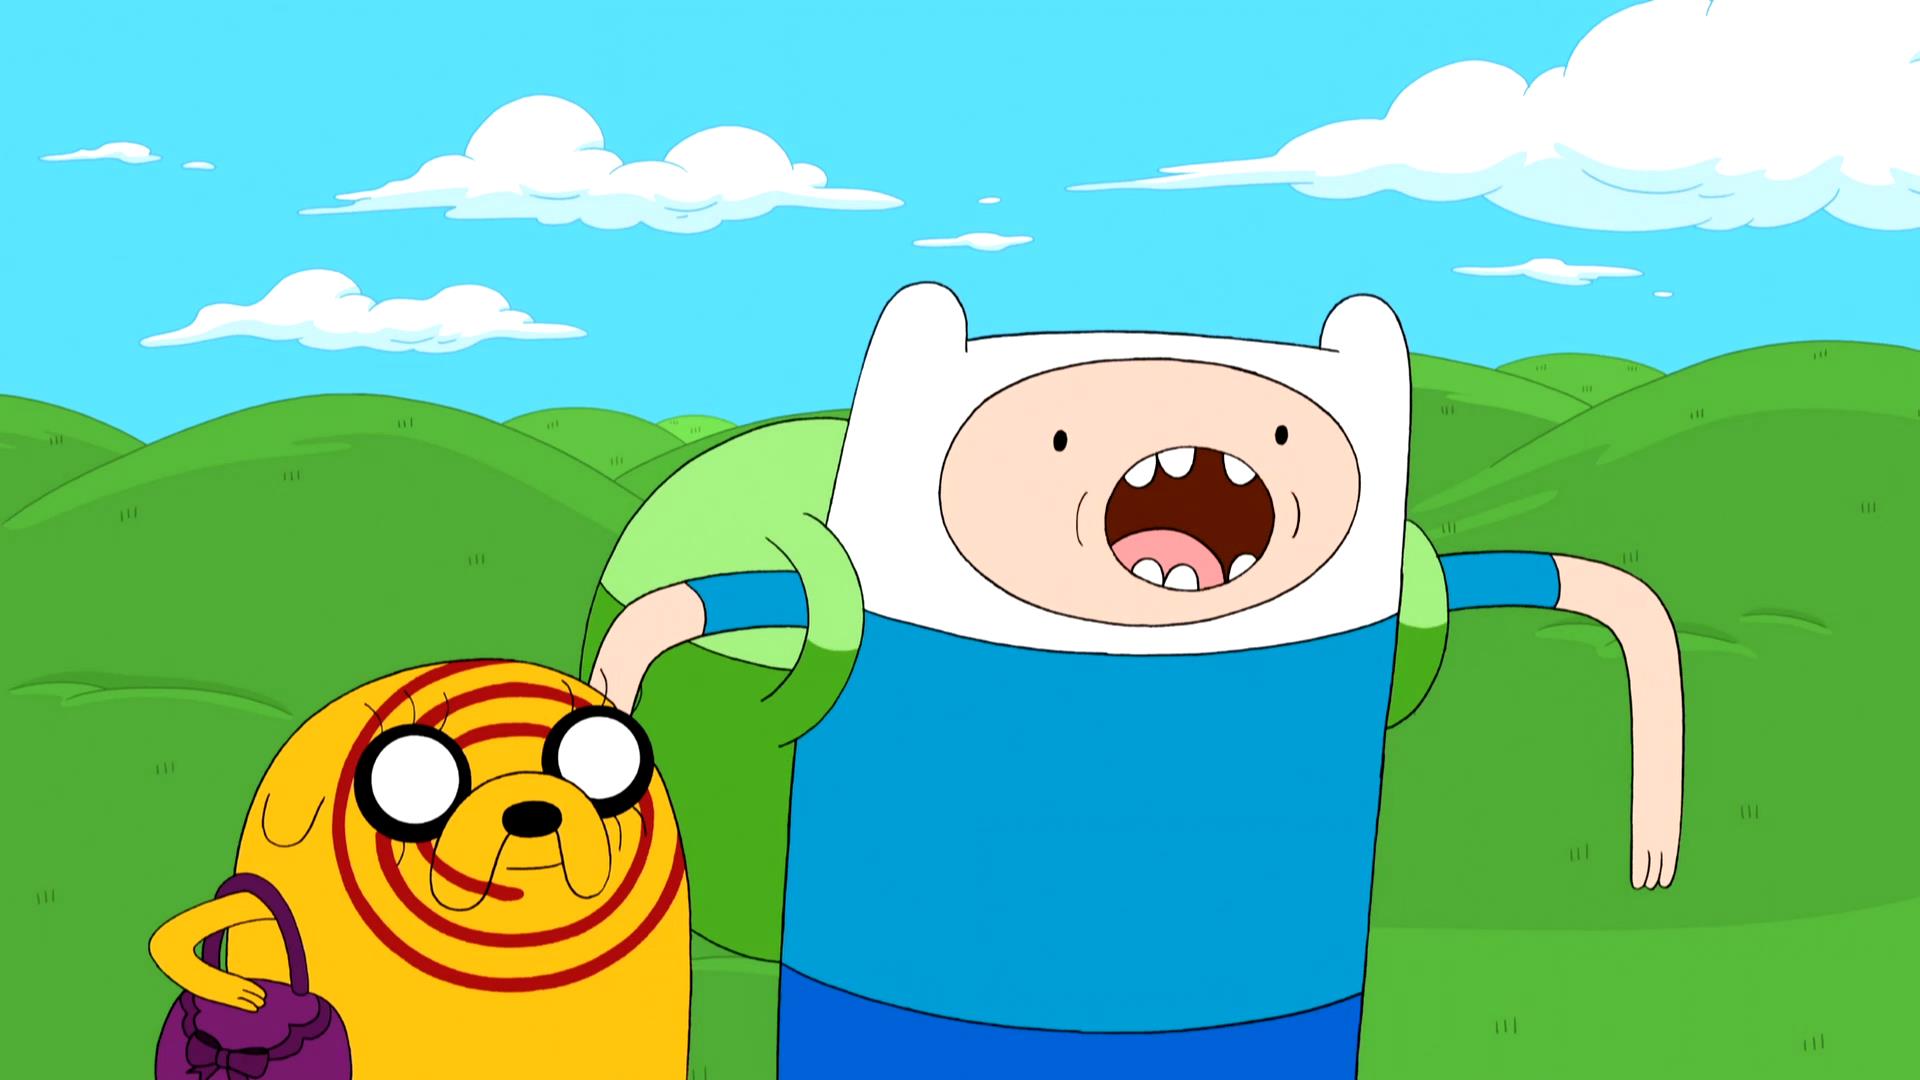 Сериал "Время приключений" / Adventure Time (2010) - трейлеры, да...